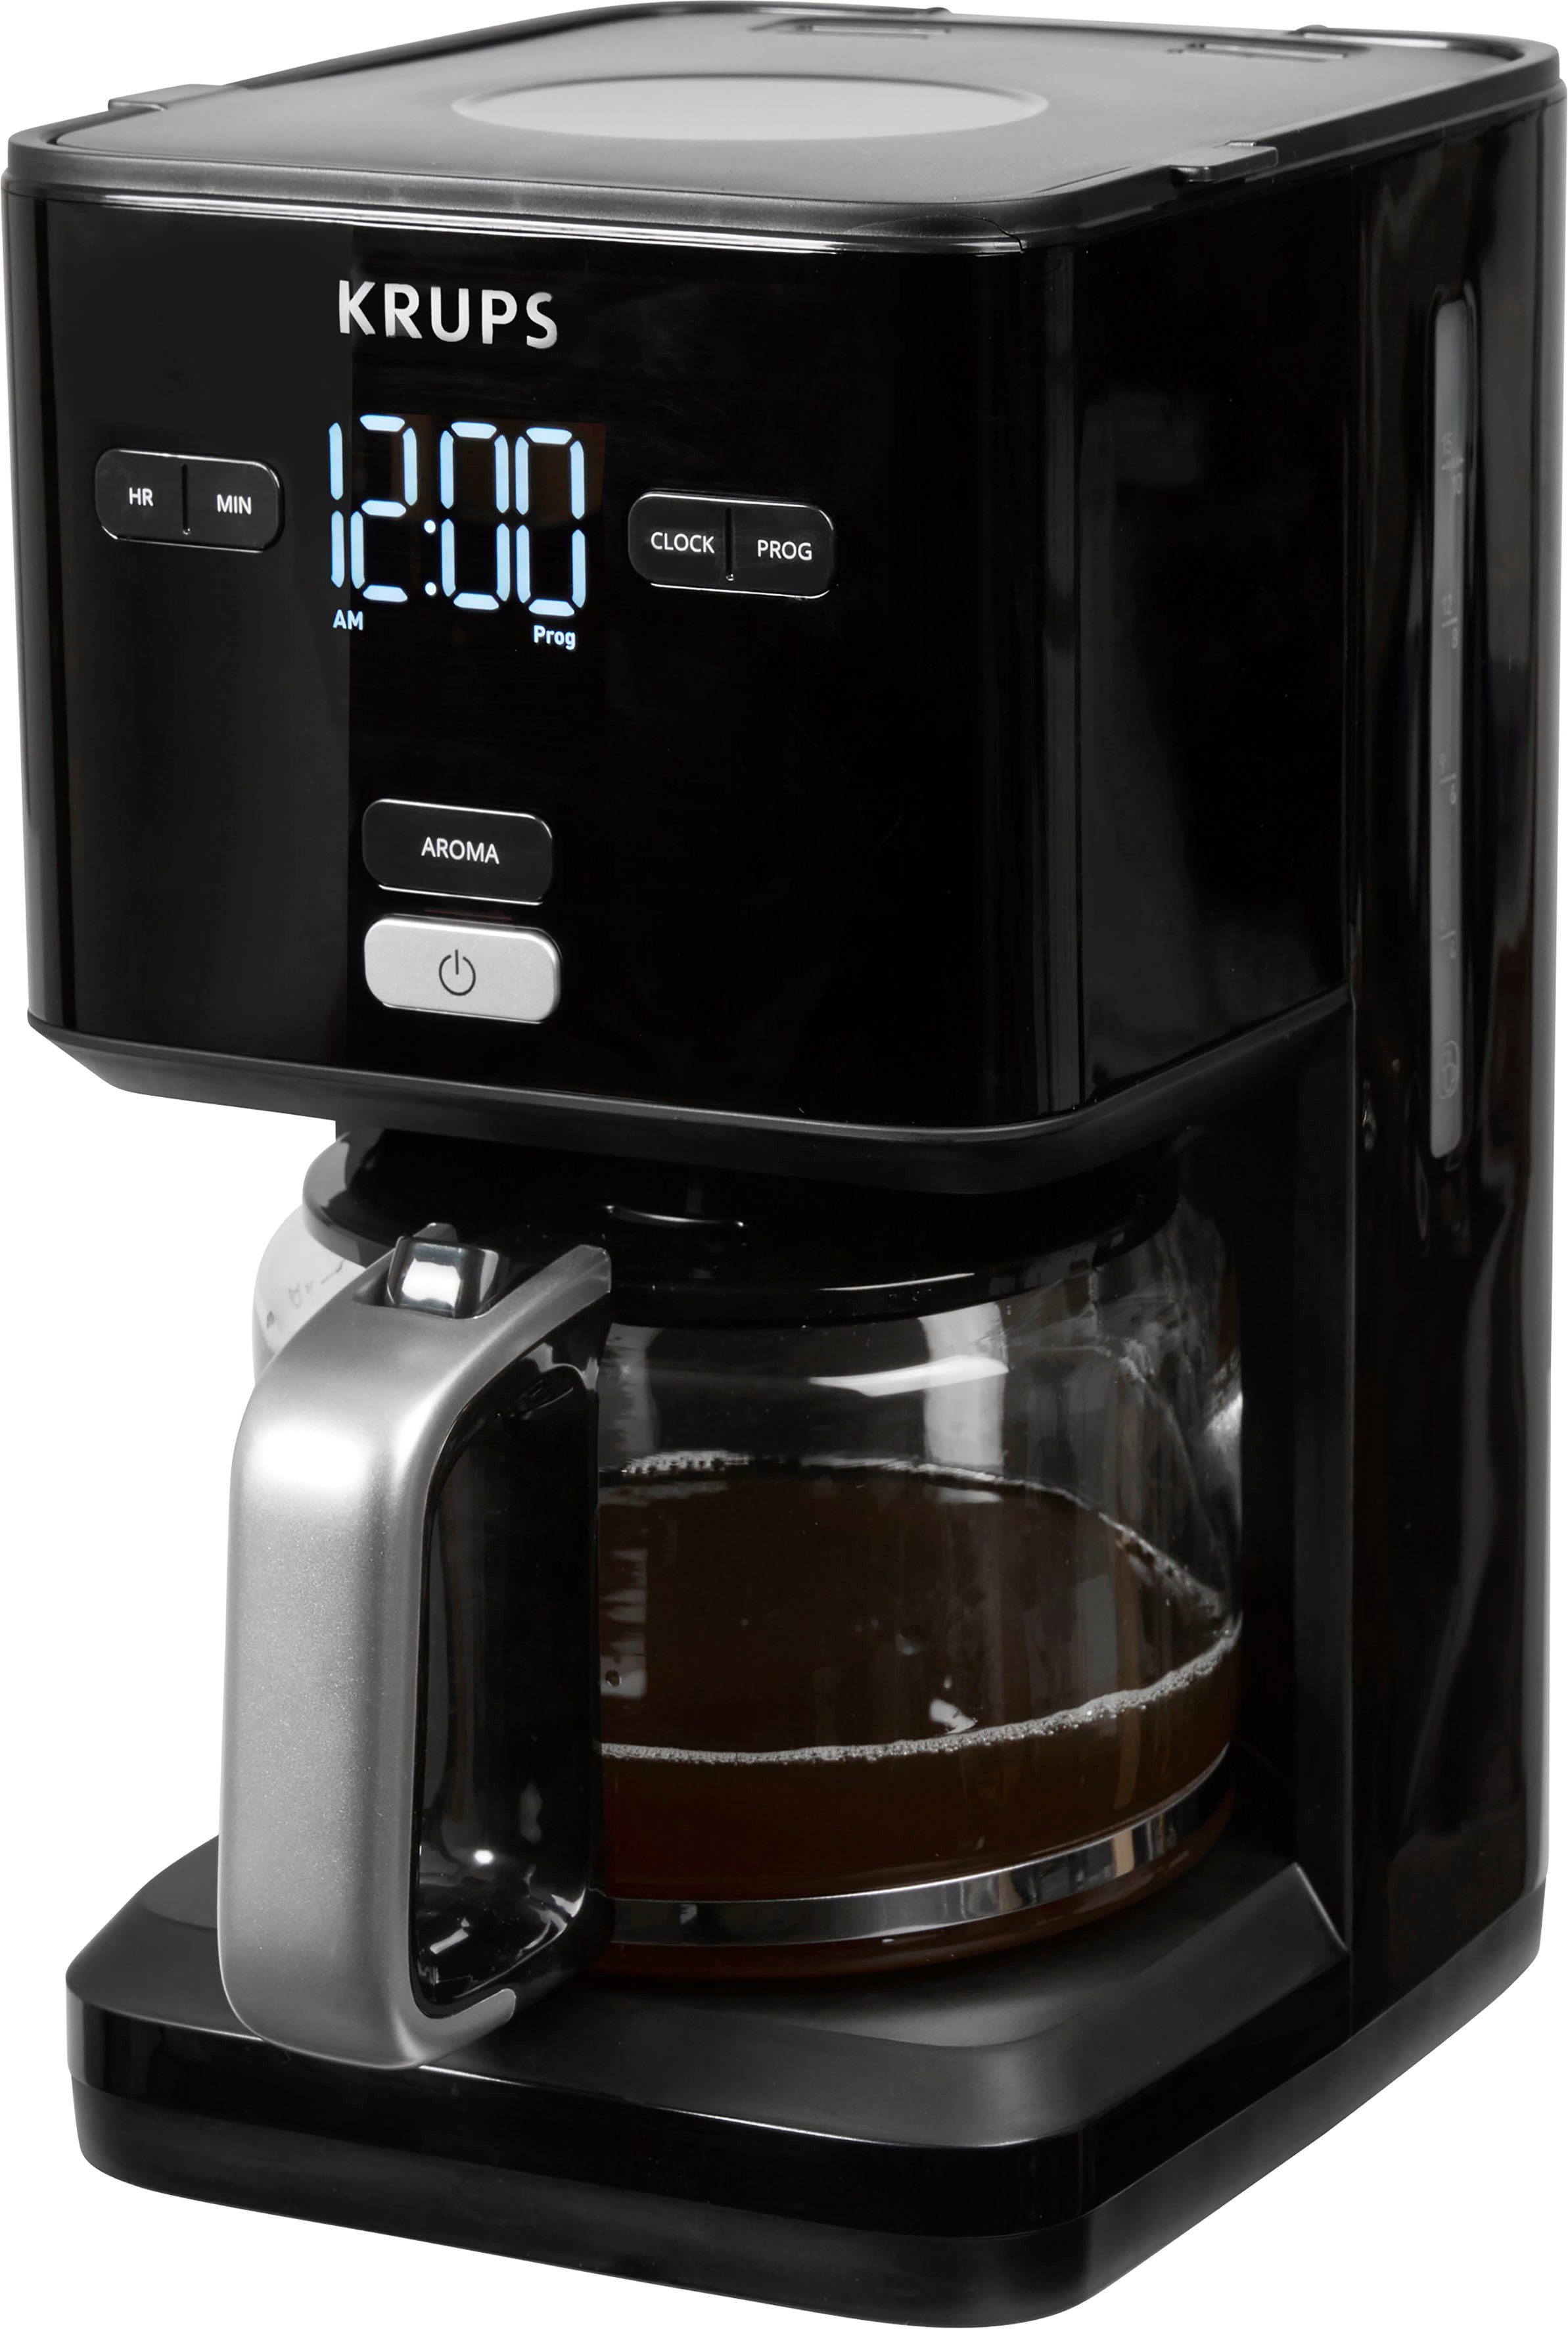 30 Smart'n automatische Minuten Filterkaffeemaschine Abschaltung Kaffeekanne, KM6008 Krups nach 24-Std-Timer, 1,25l Light,